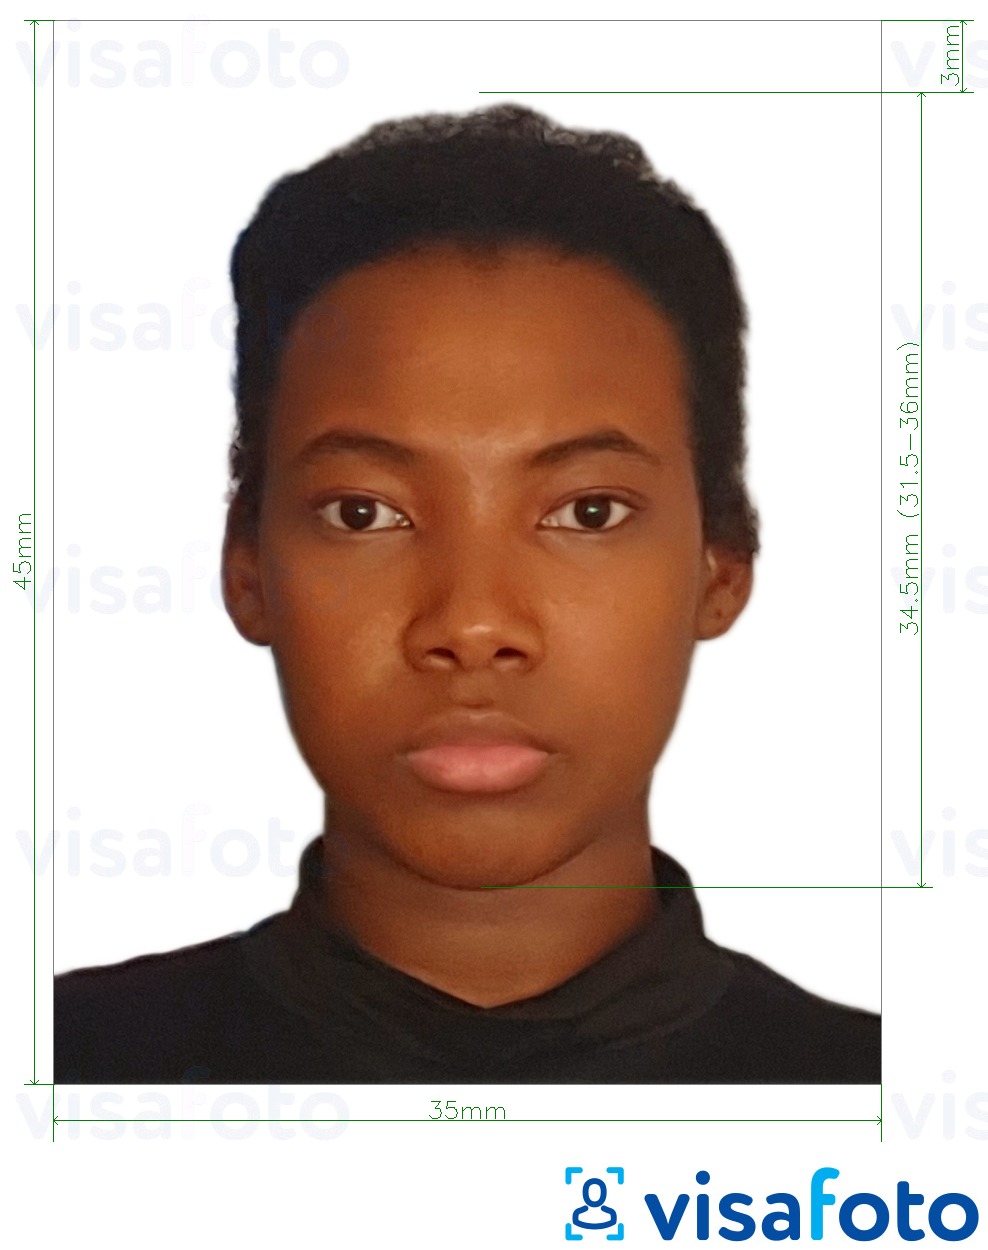 Fotobeispiel für Äquatorialguinea Visum 35x45 mm (3,5x4,5 cm) mit genauer größenangabe